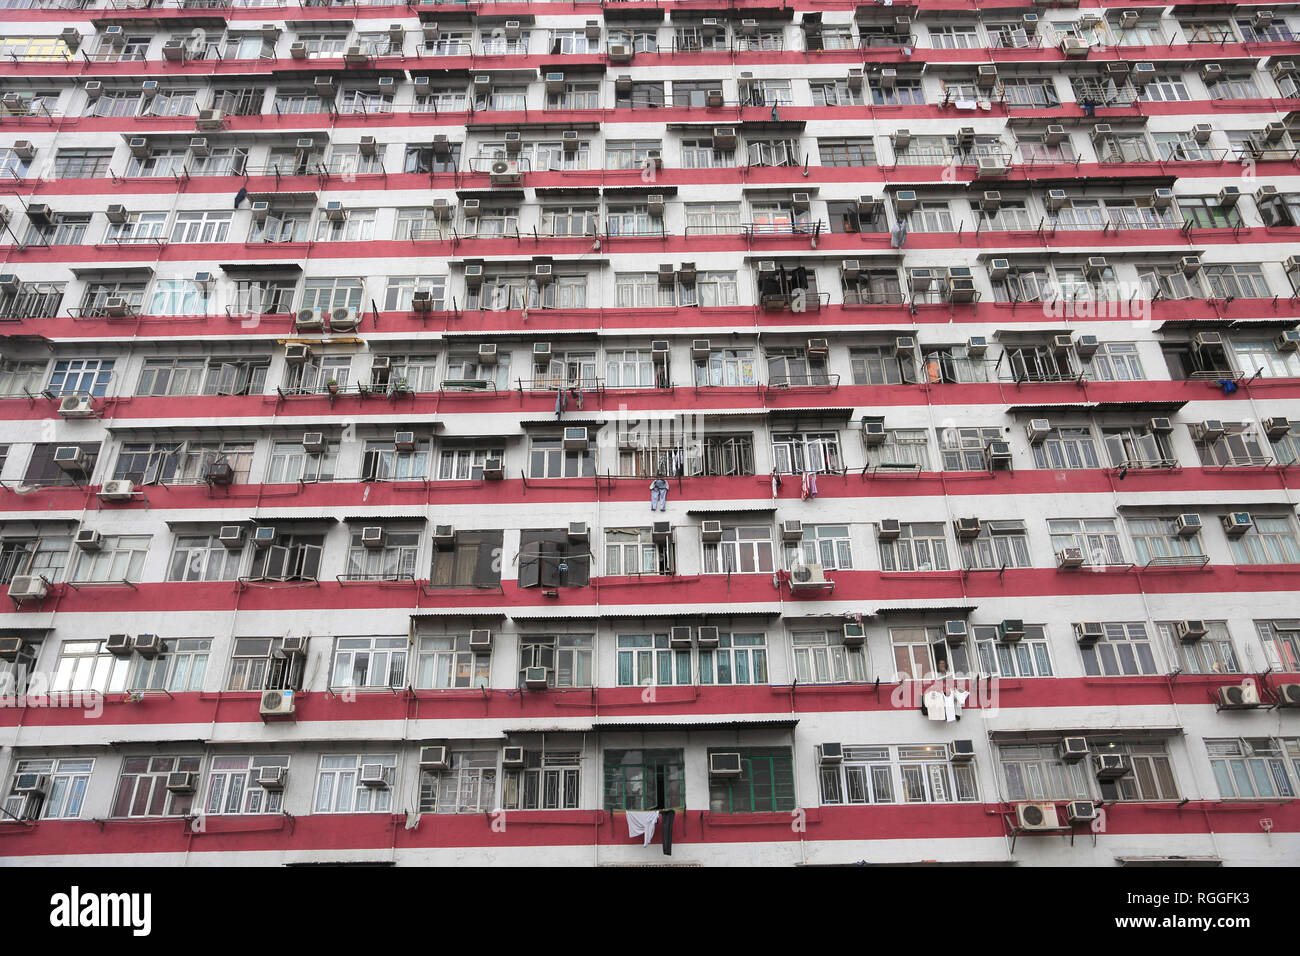 Offres et demandes de logement, Immeuble, Yau Ma Tei, Kowloon, Hong Kong, Chine, Asie Banque D'Images